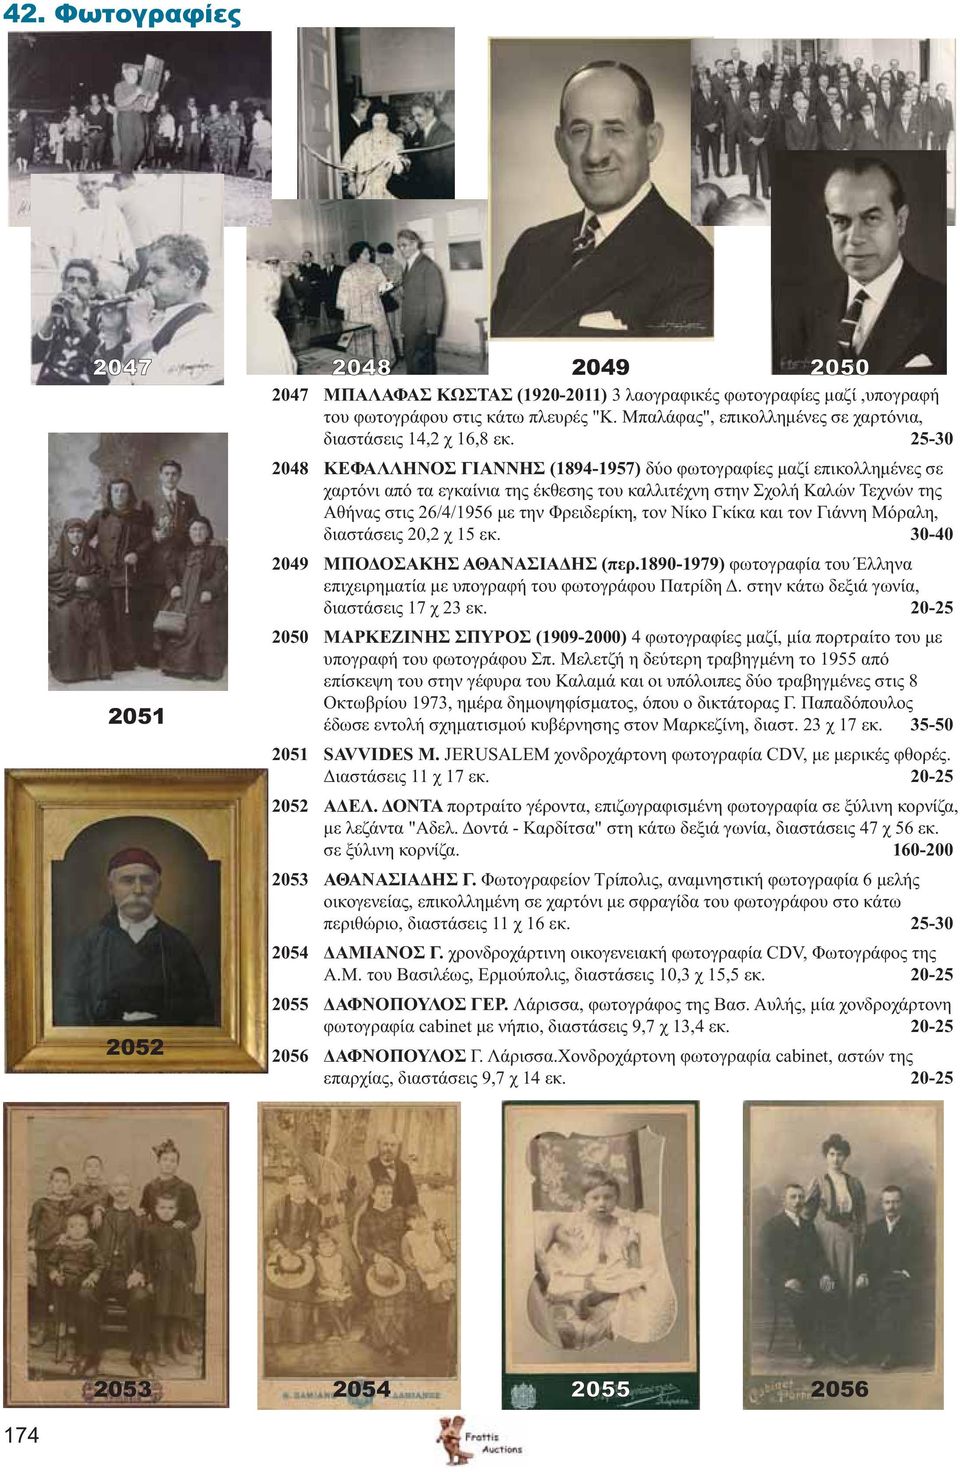 τον Νίκο Γκίκα και τον Γιάννη Μόραλη, διαστάσεις 20,2 χ 15 εκ. 30-40 2049 ΜΠΟΔΟΣΑΚΗΣ ΑΘΑΝΑΣΙΑΔΗΣ (περ.1890-1979) φωτογραφία του Έλληνα επιχειρηματία με υπογραφή του φωτογράφου Πατρίδη Δ.